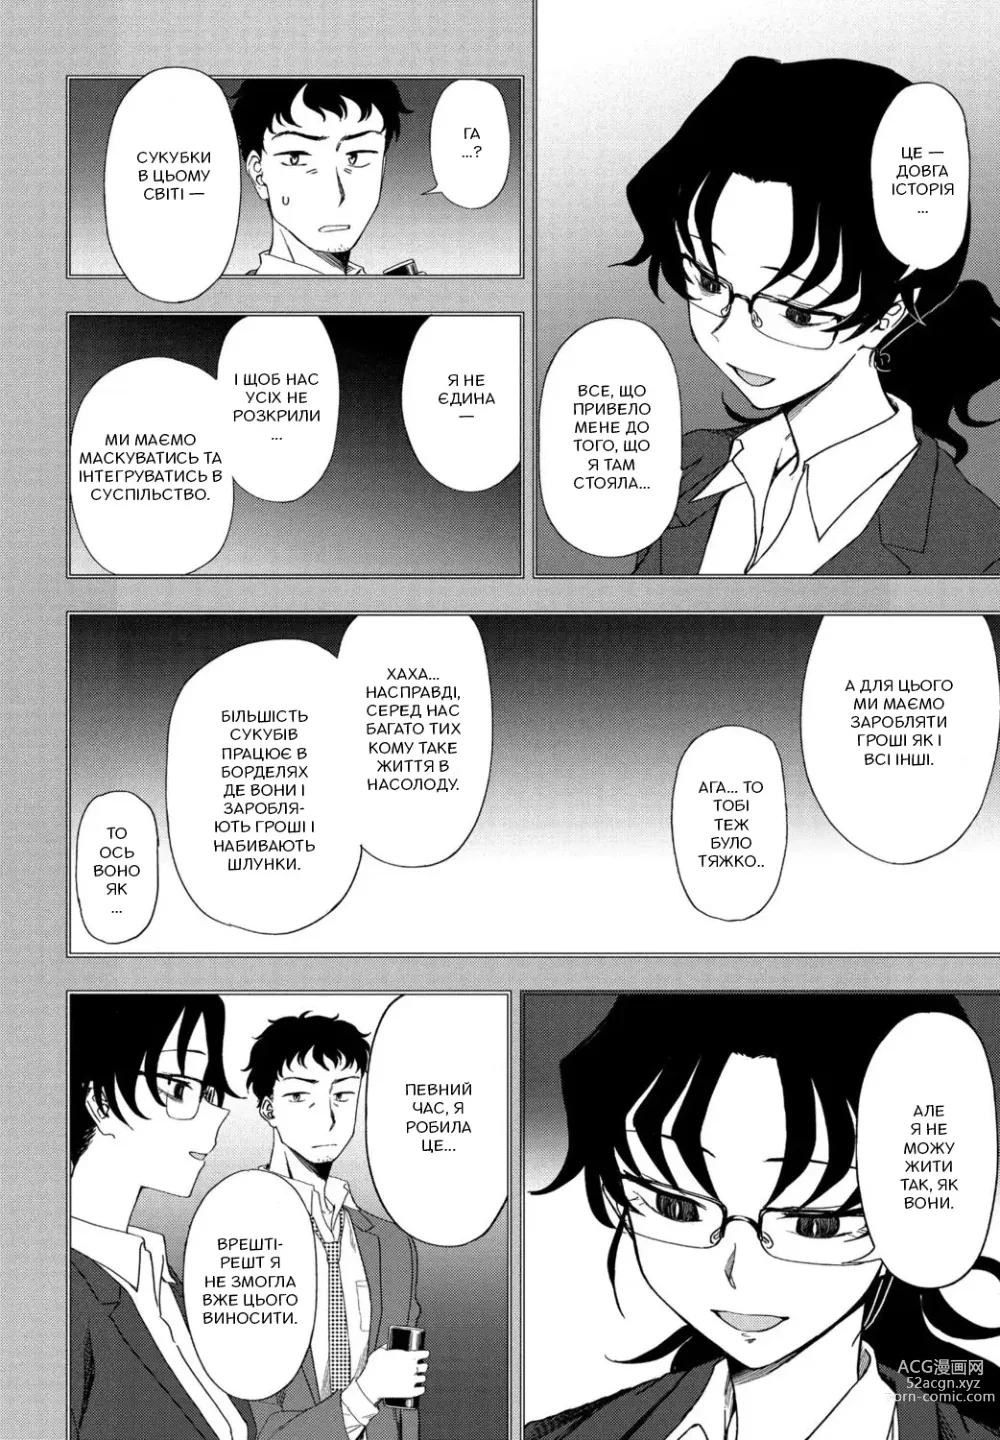 Page 6 of manga [Кумано Тоору] Мій ідеальний господар